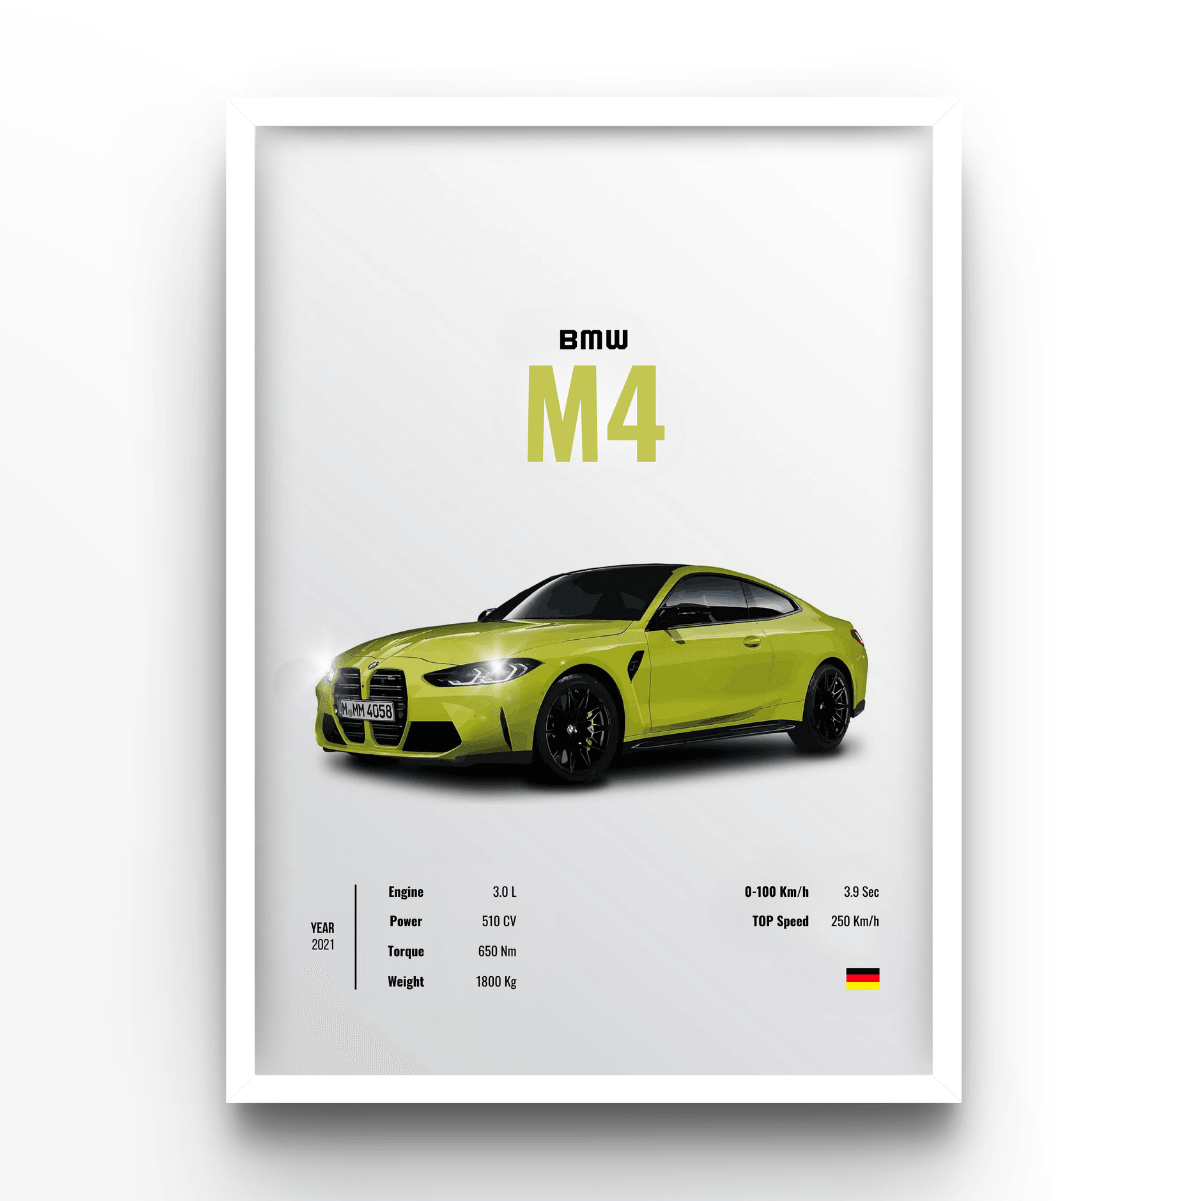 BMW M4 - A4, A3, A2 Posters Base - Poster Print Shop / Art Prints / PostersBase